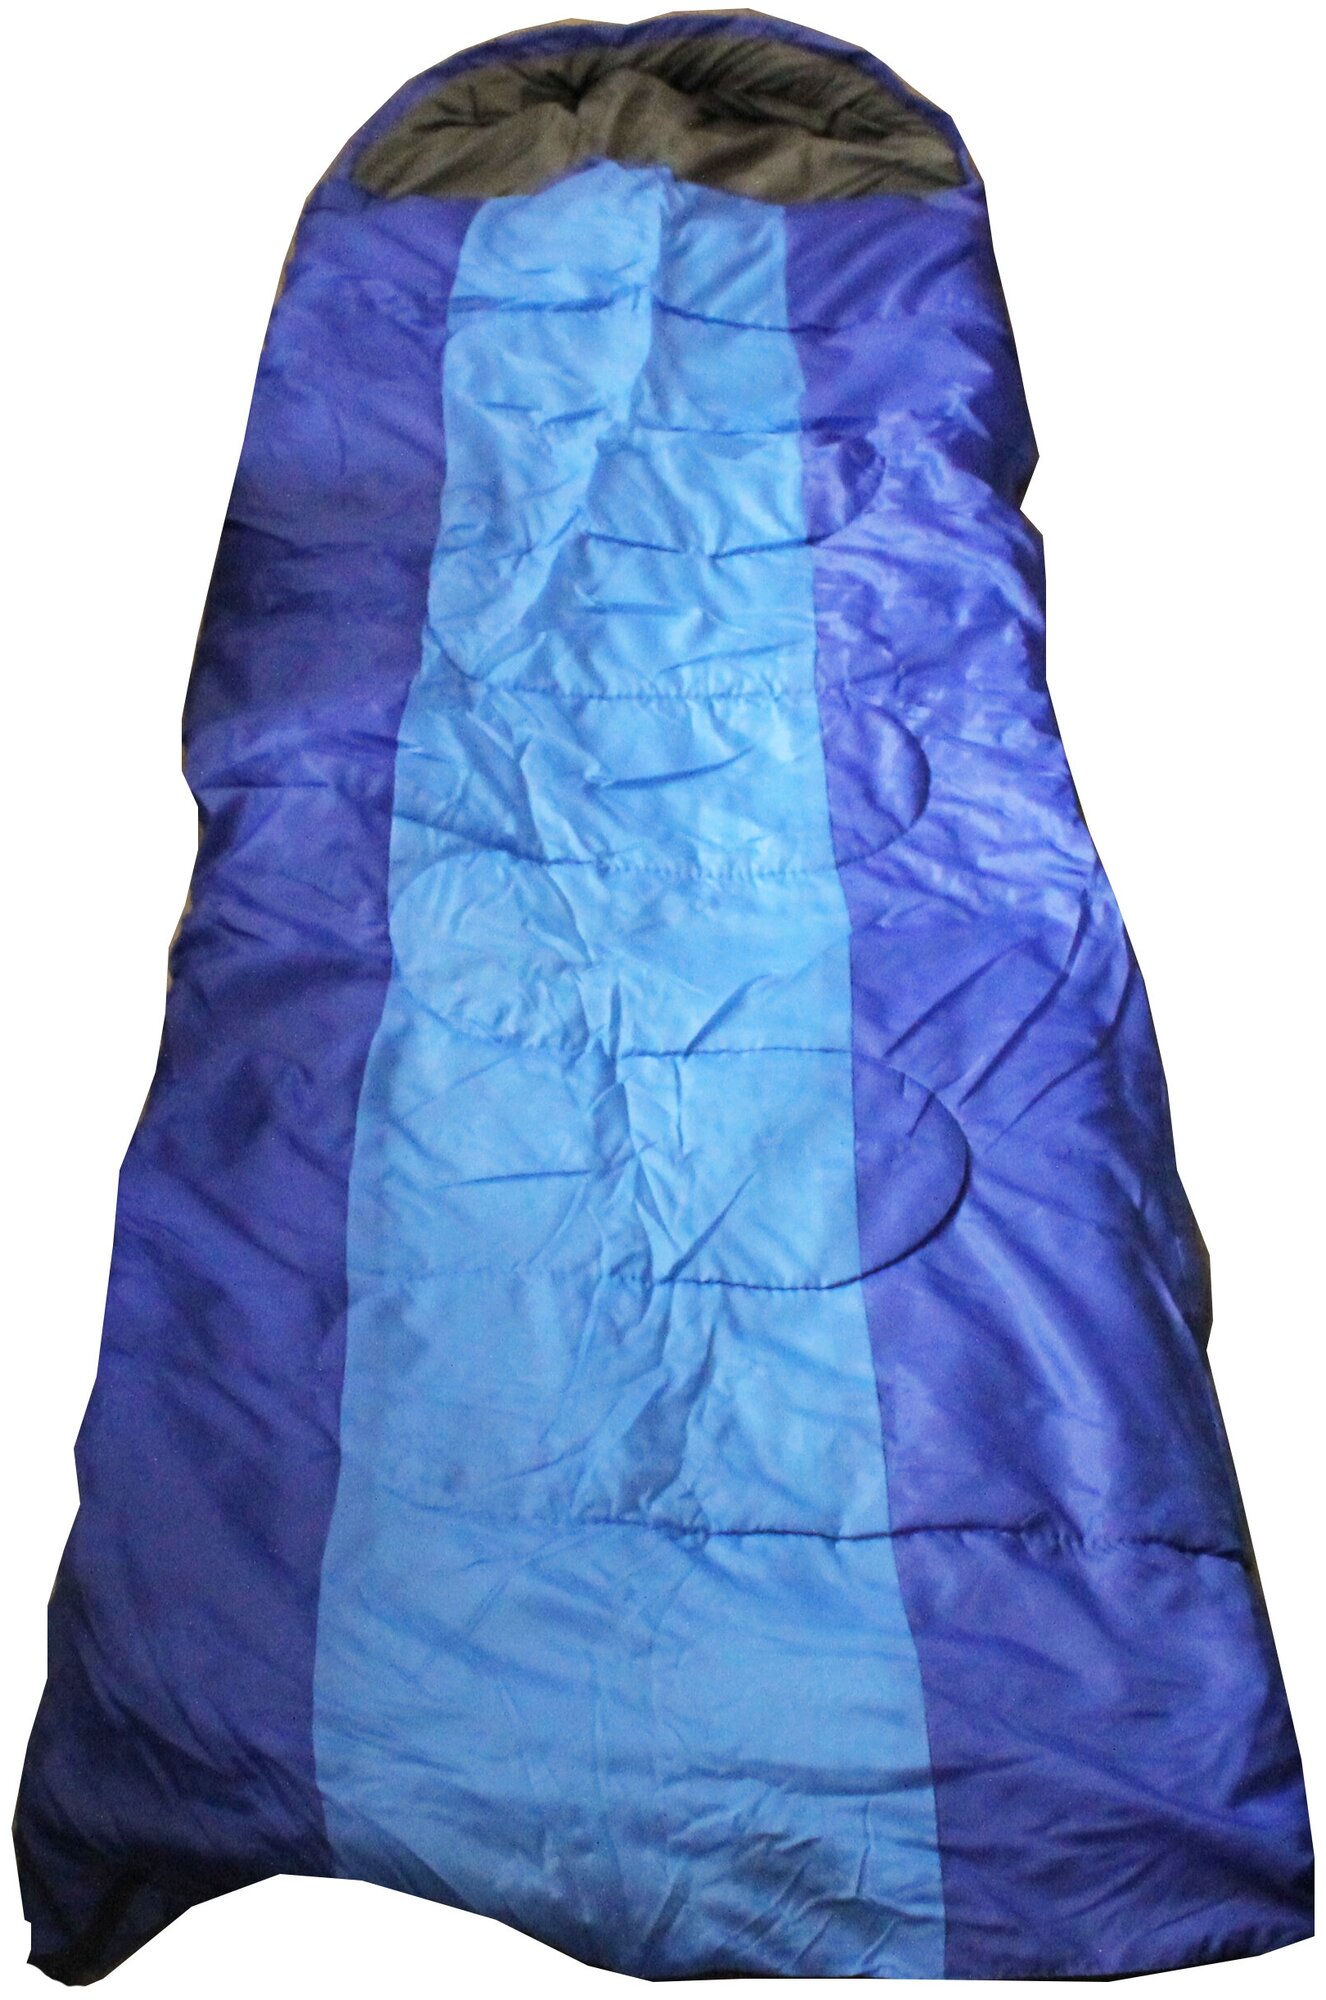 Спальный мешок 70*200 см